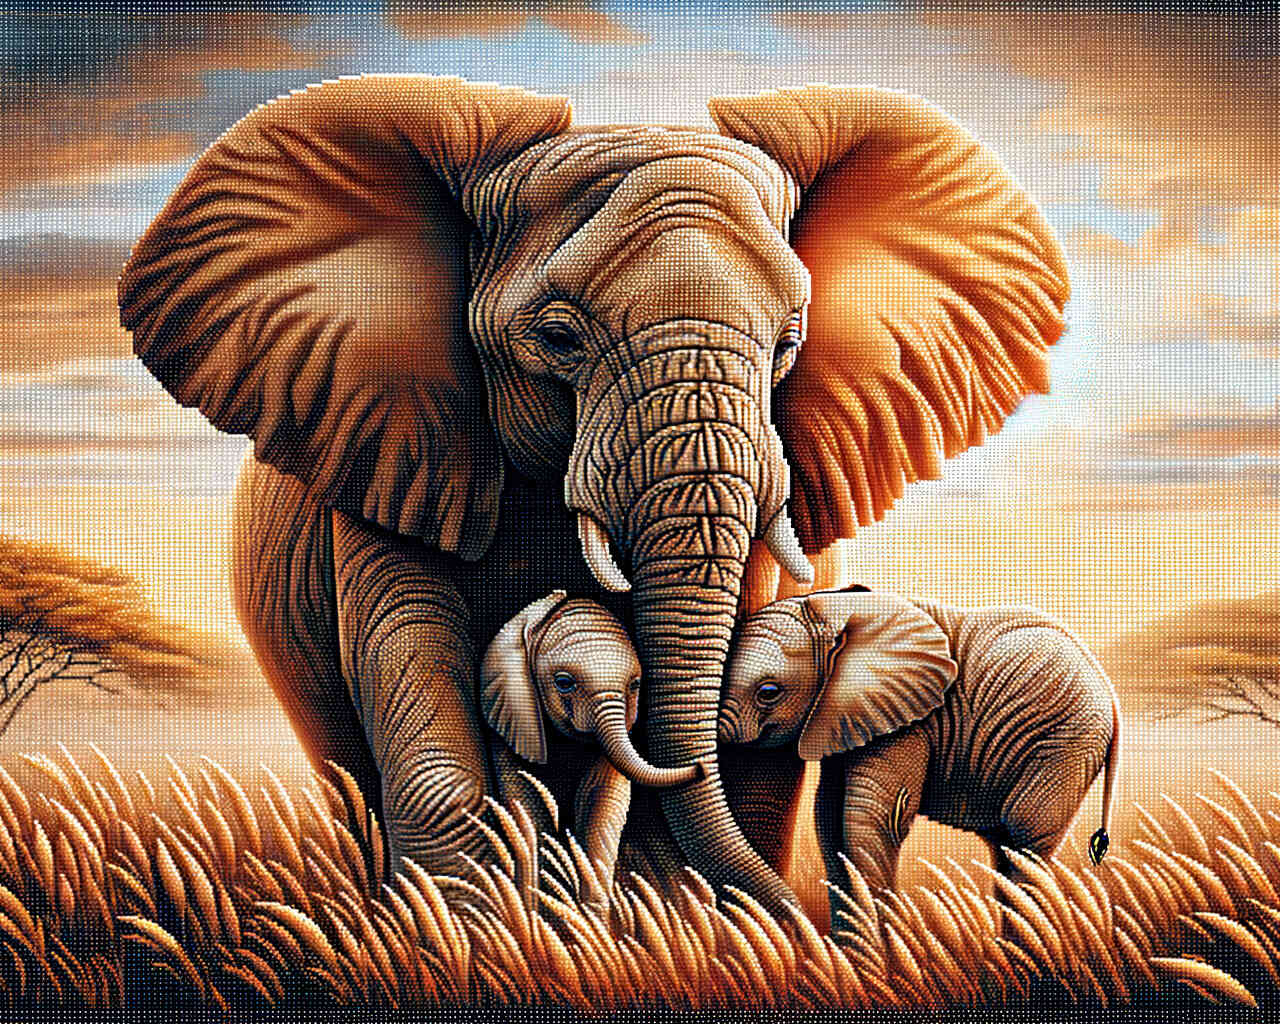 Diamond Painting - Elefant, Mutter mit Kindern